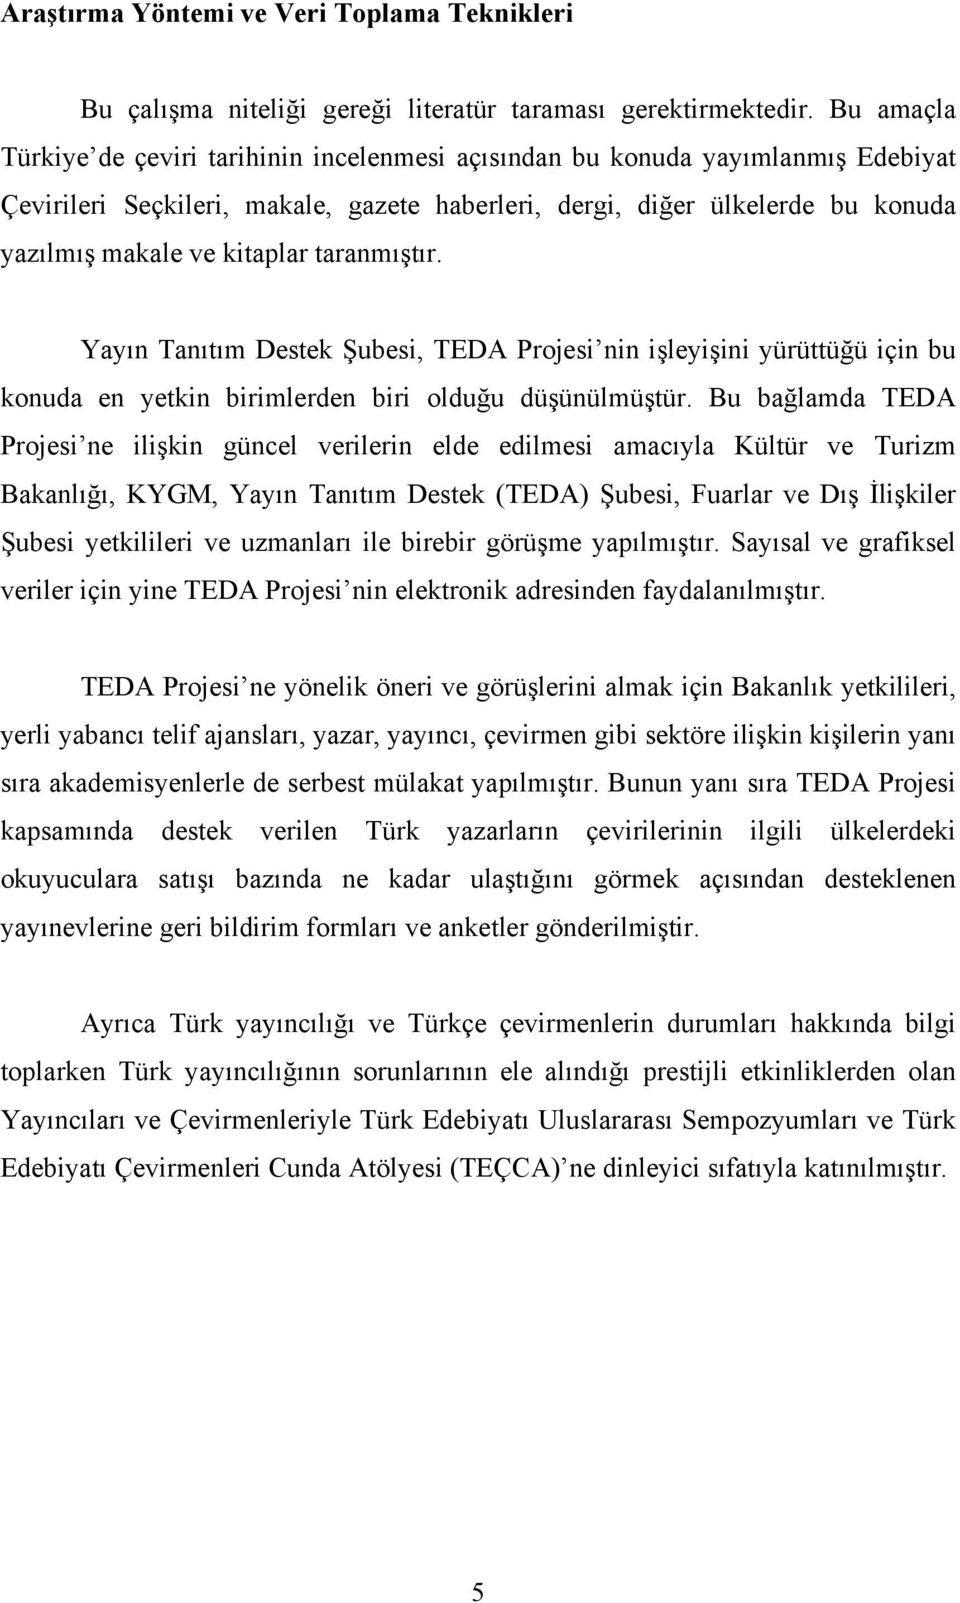 taranmıştır. Yayın Tanıtım Destek Şubesi, TEDA Projesi nin işleyişini yürüttüğü için bu konuda en yetkin birimlerden biri olduğu düşünülmüştür.